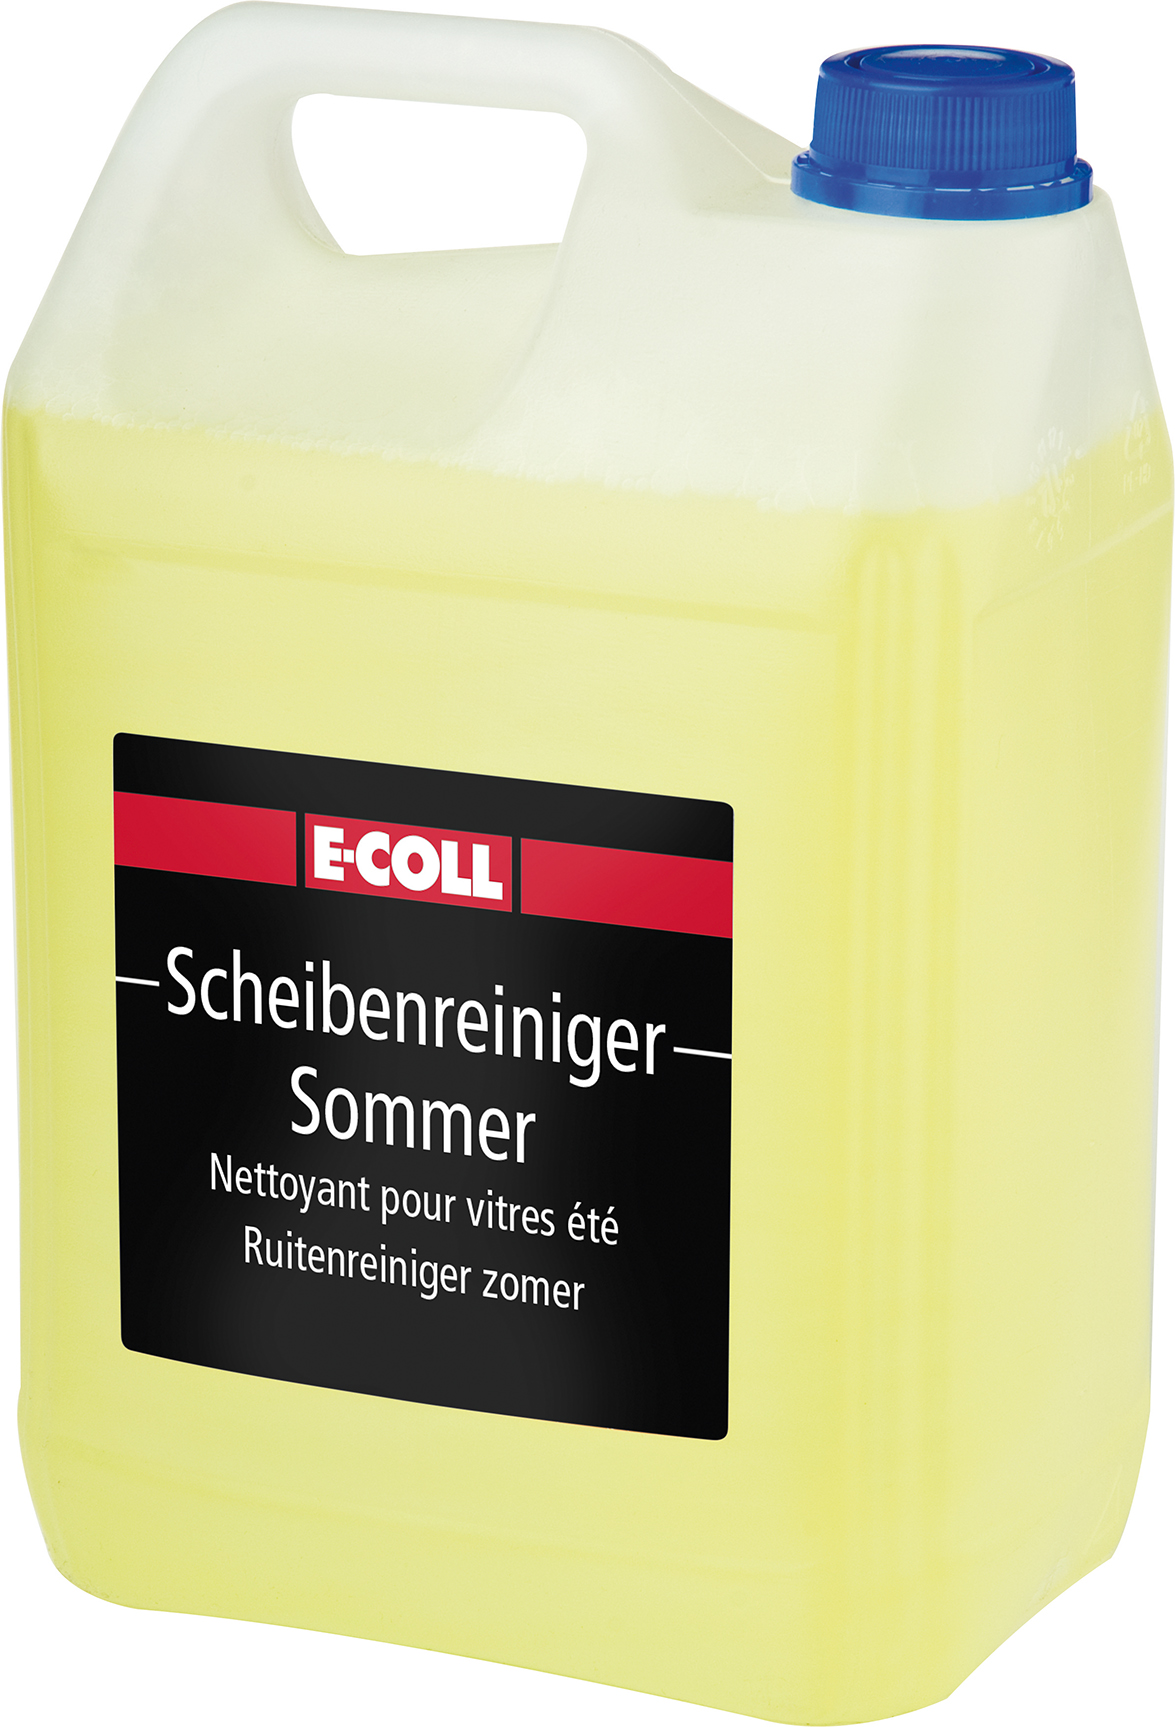 Imagen de Scheibenreiniger Sommer 5L Fertiggemisch E-COLL